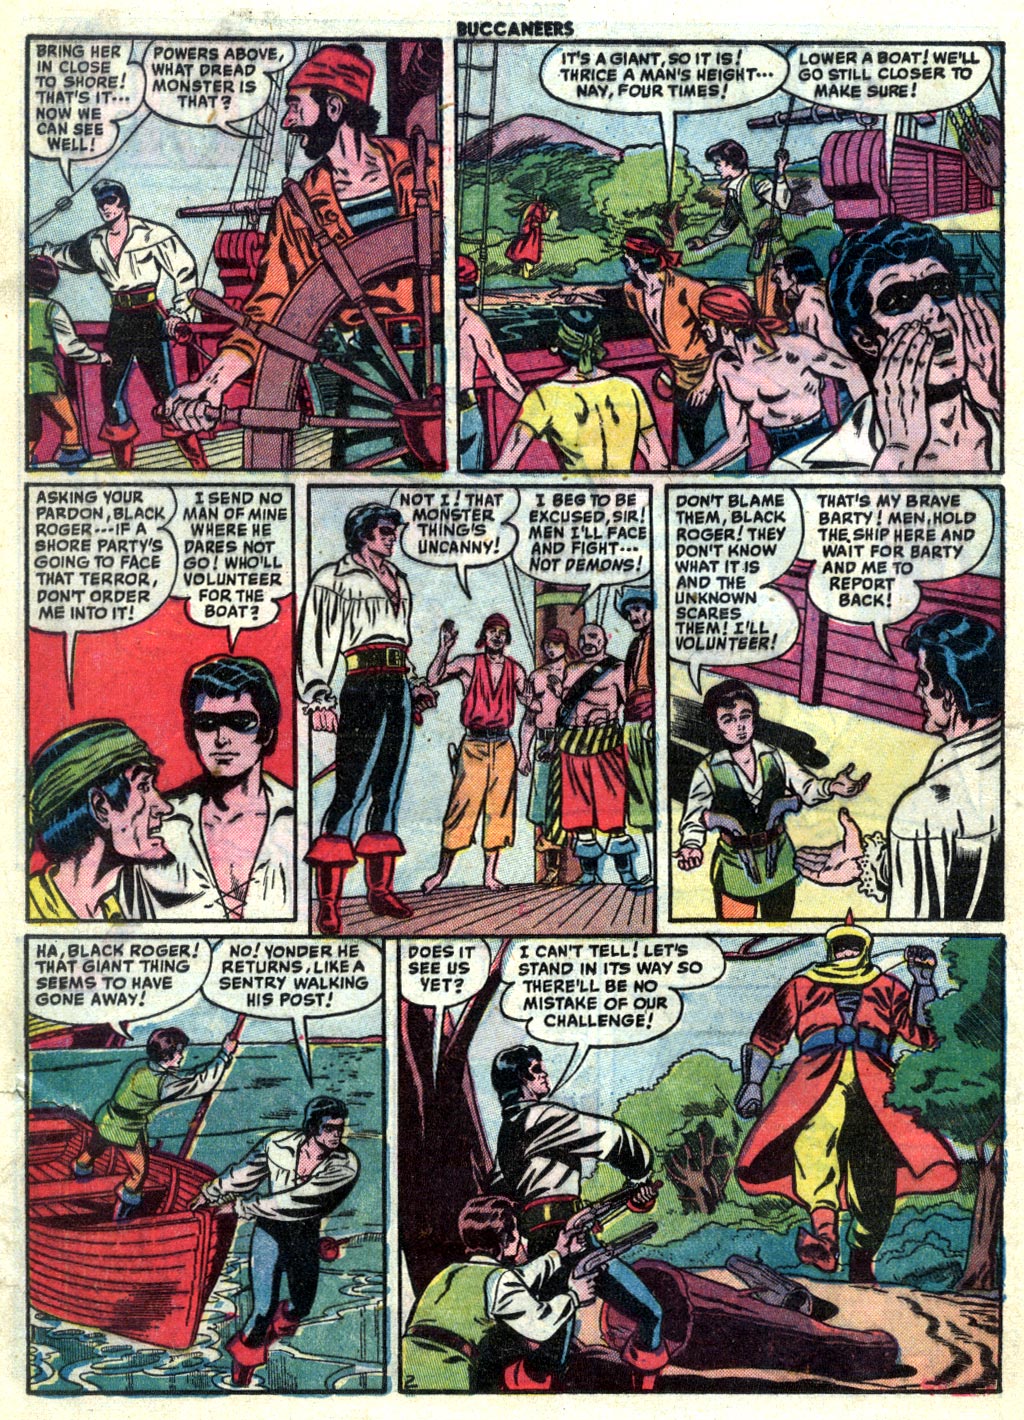 Read online Buccaneers comic -  Issue #23 - 28